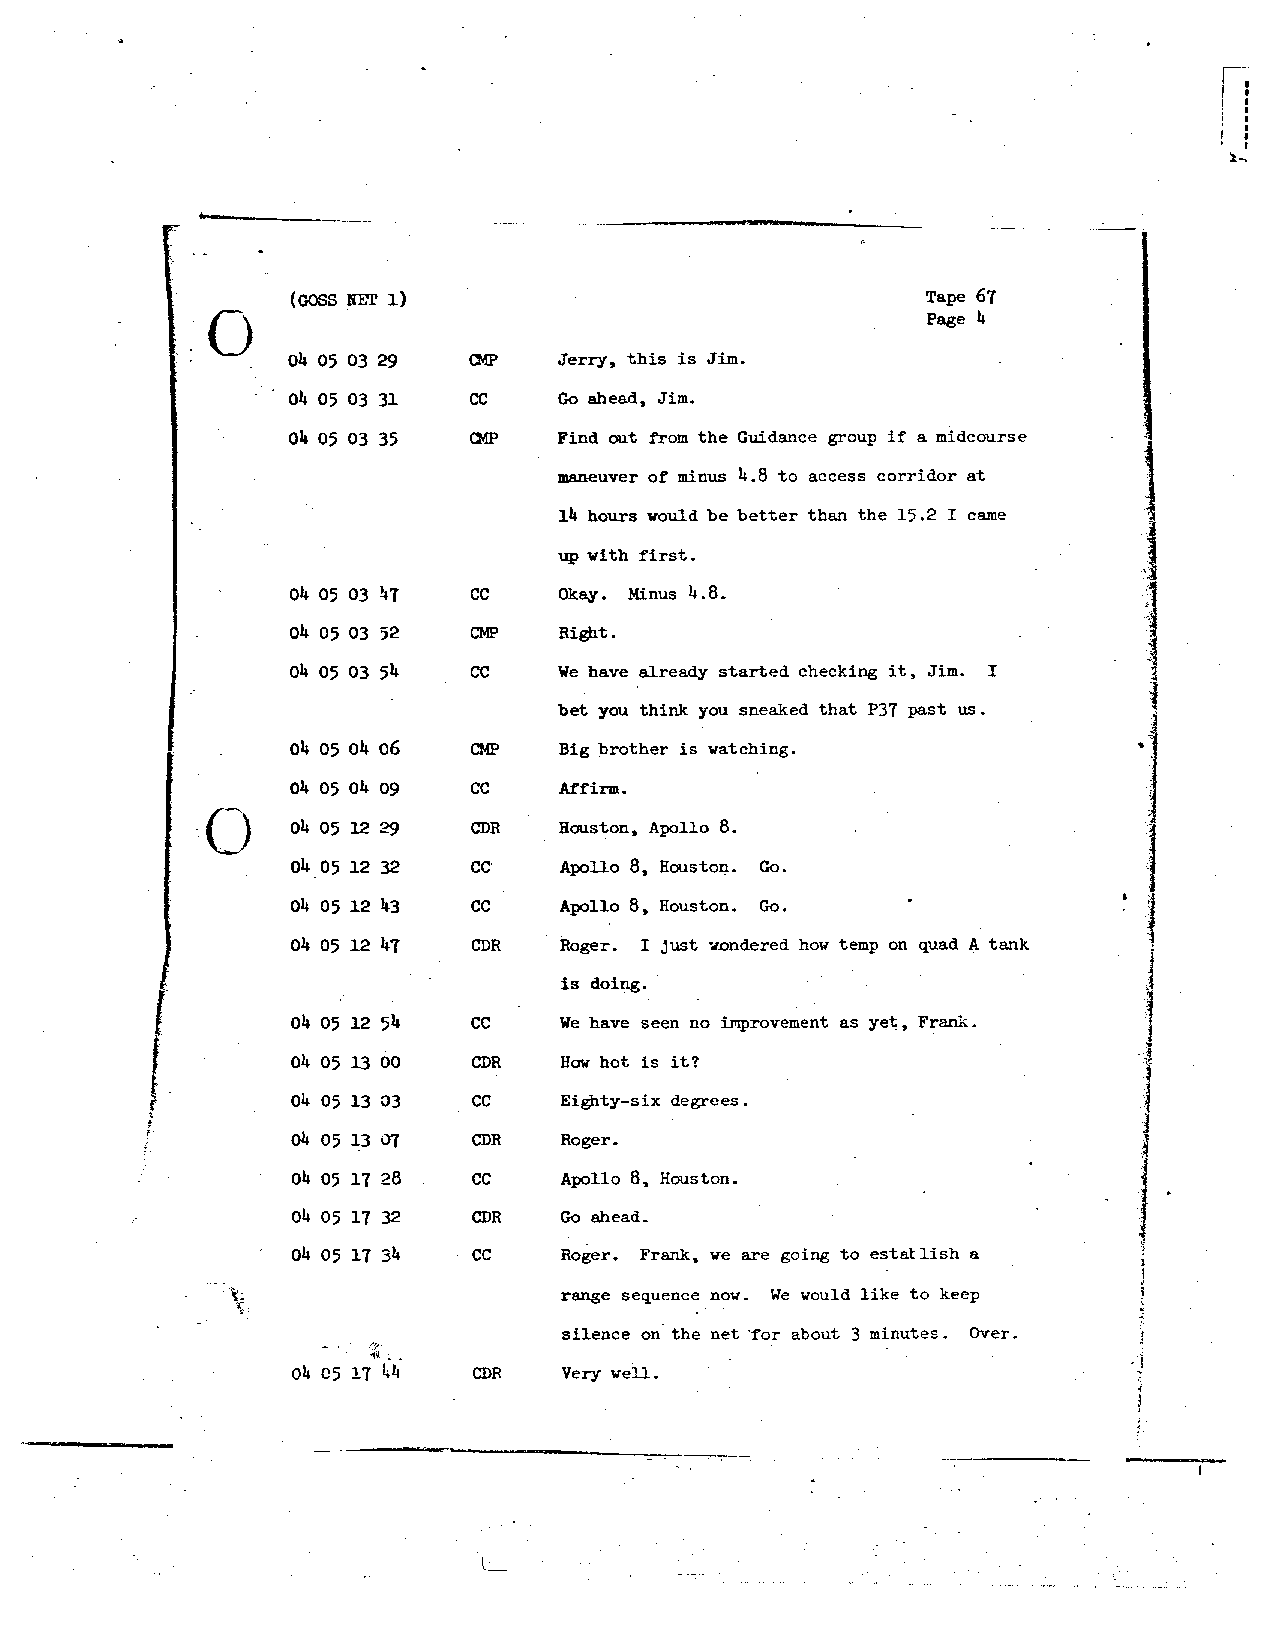 Page 530 of Apollo 8’s original transcript